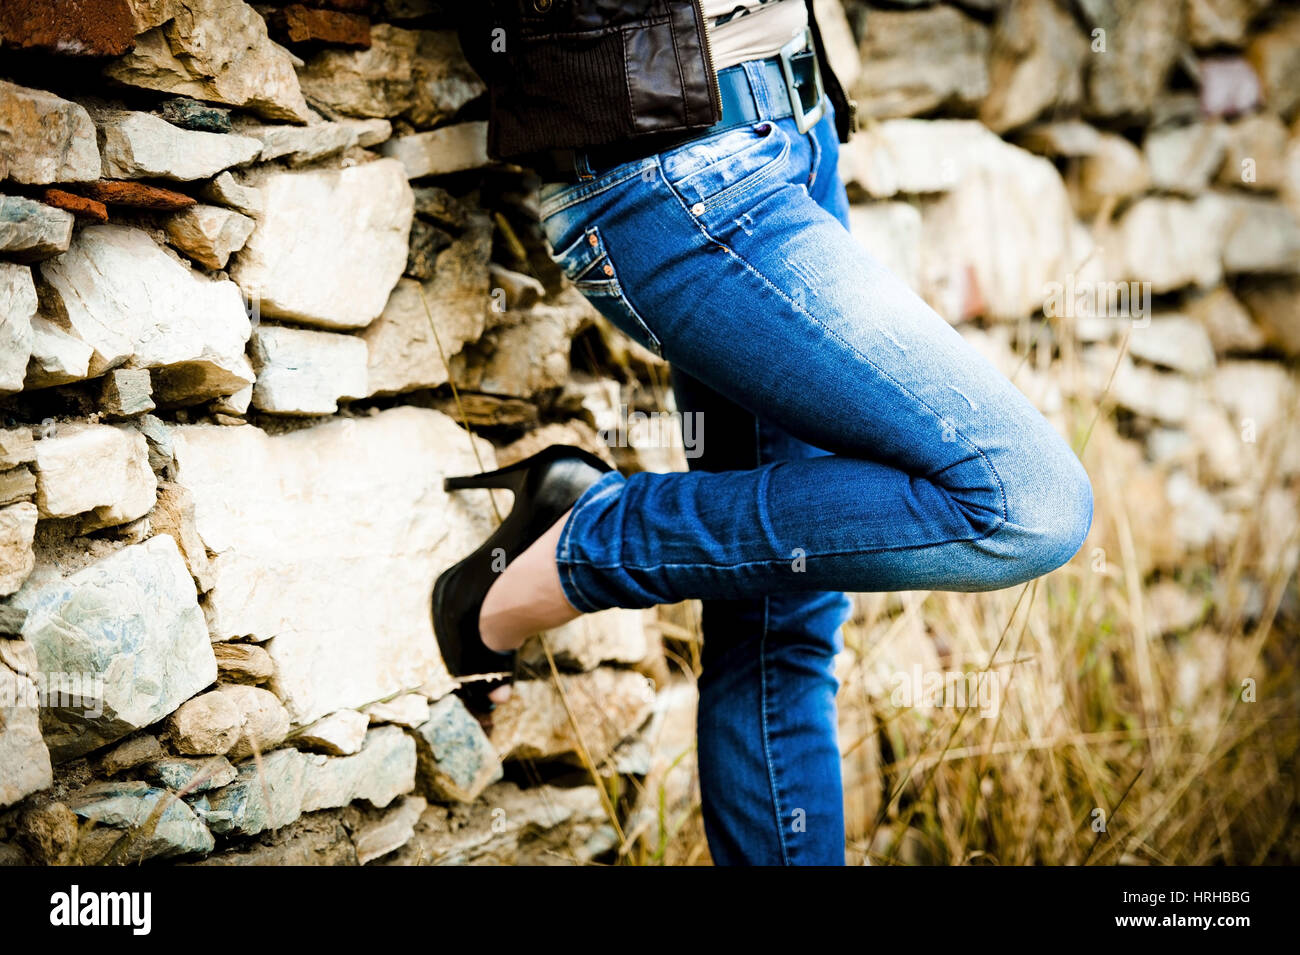 Model released, Frau in Blue Jeans - woman in Blue Jeans Stock Photo